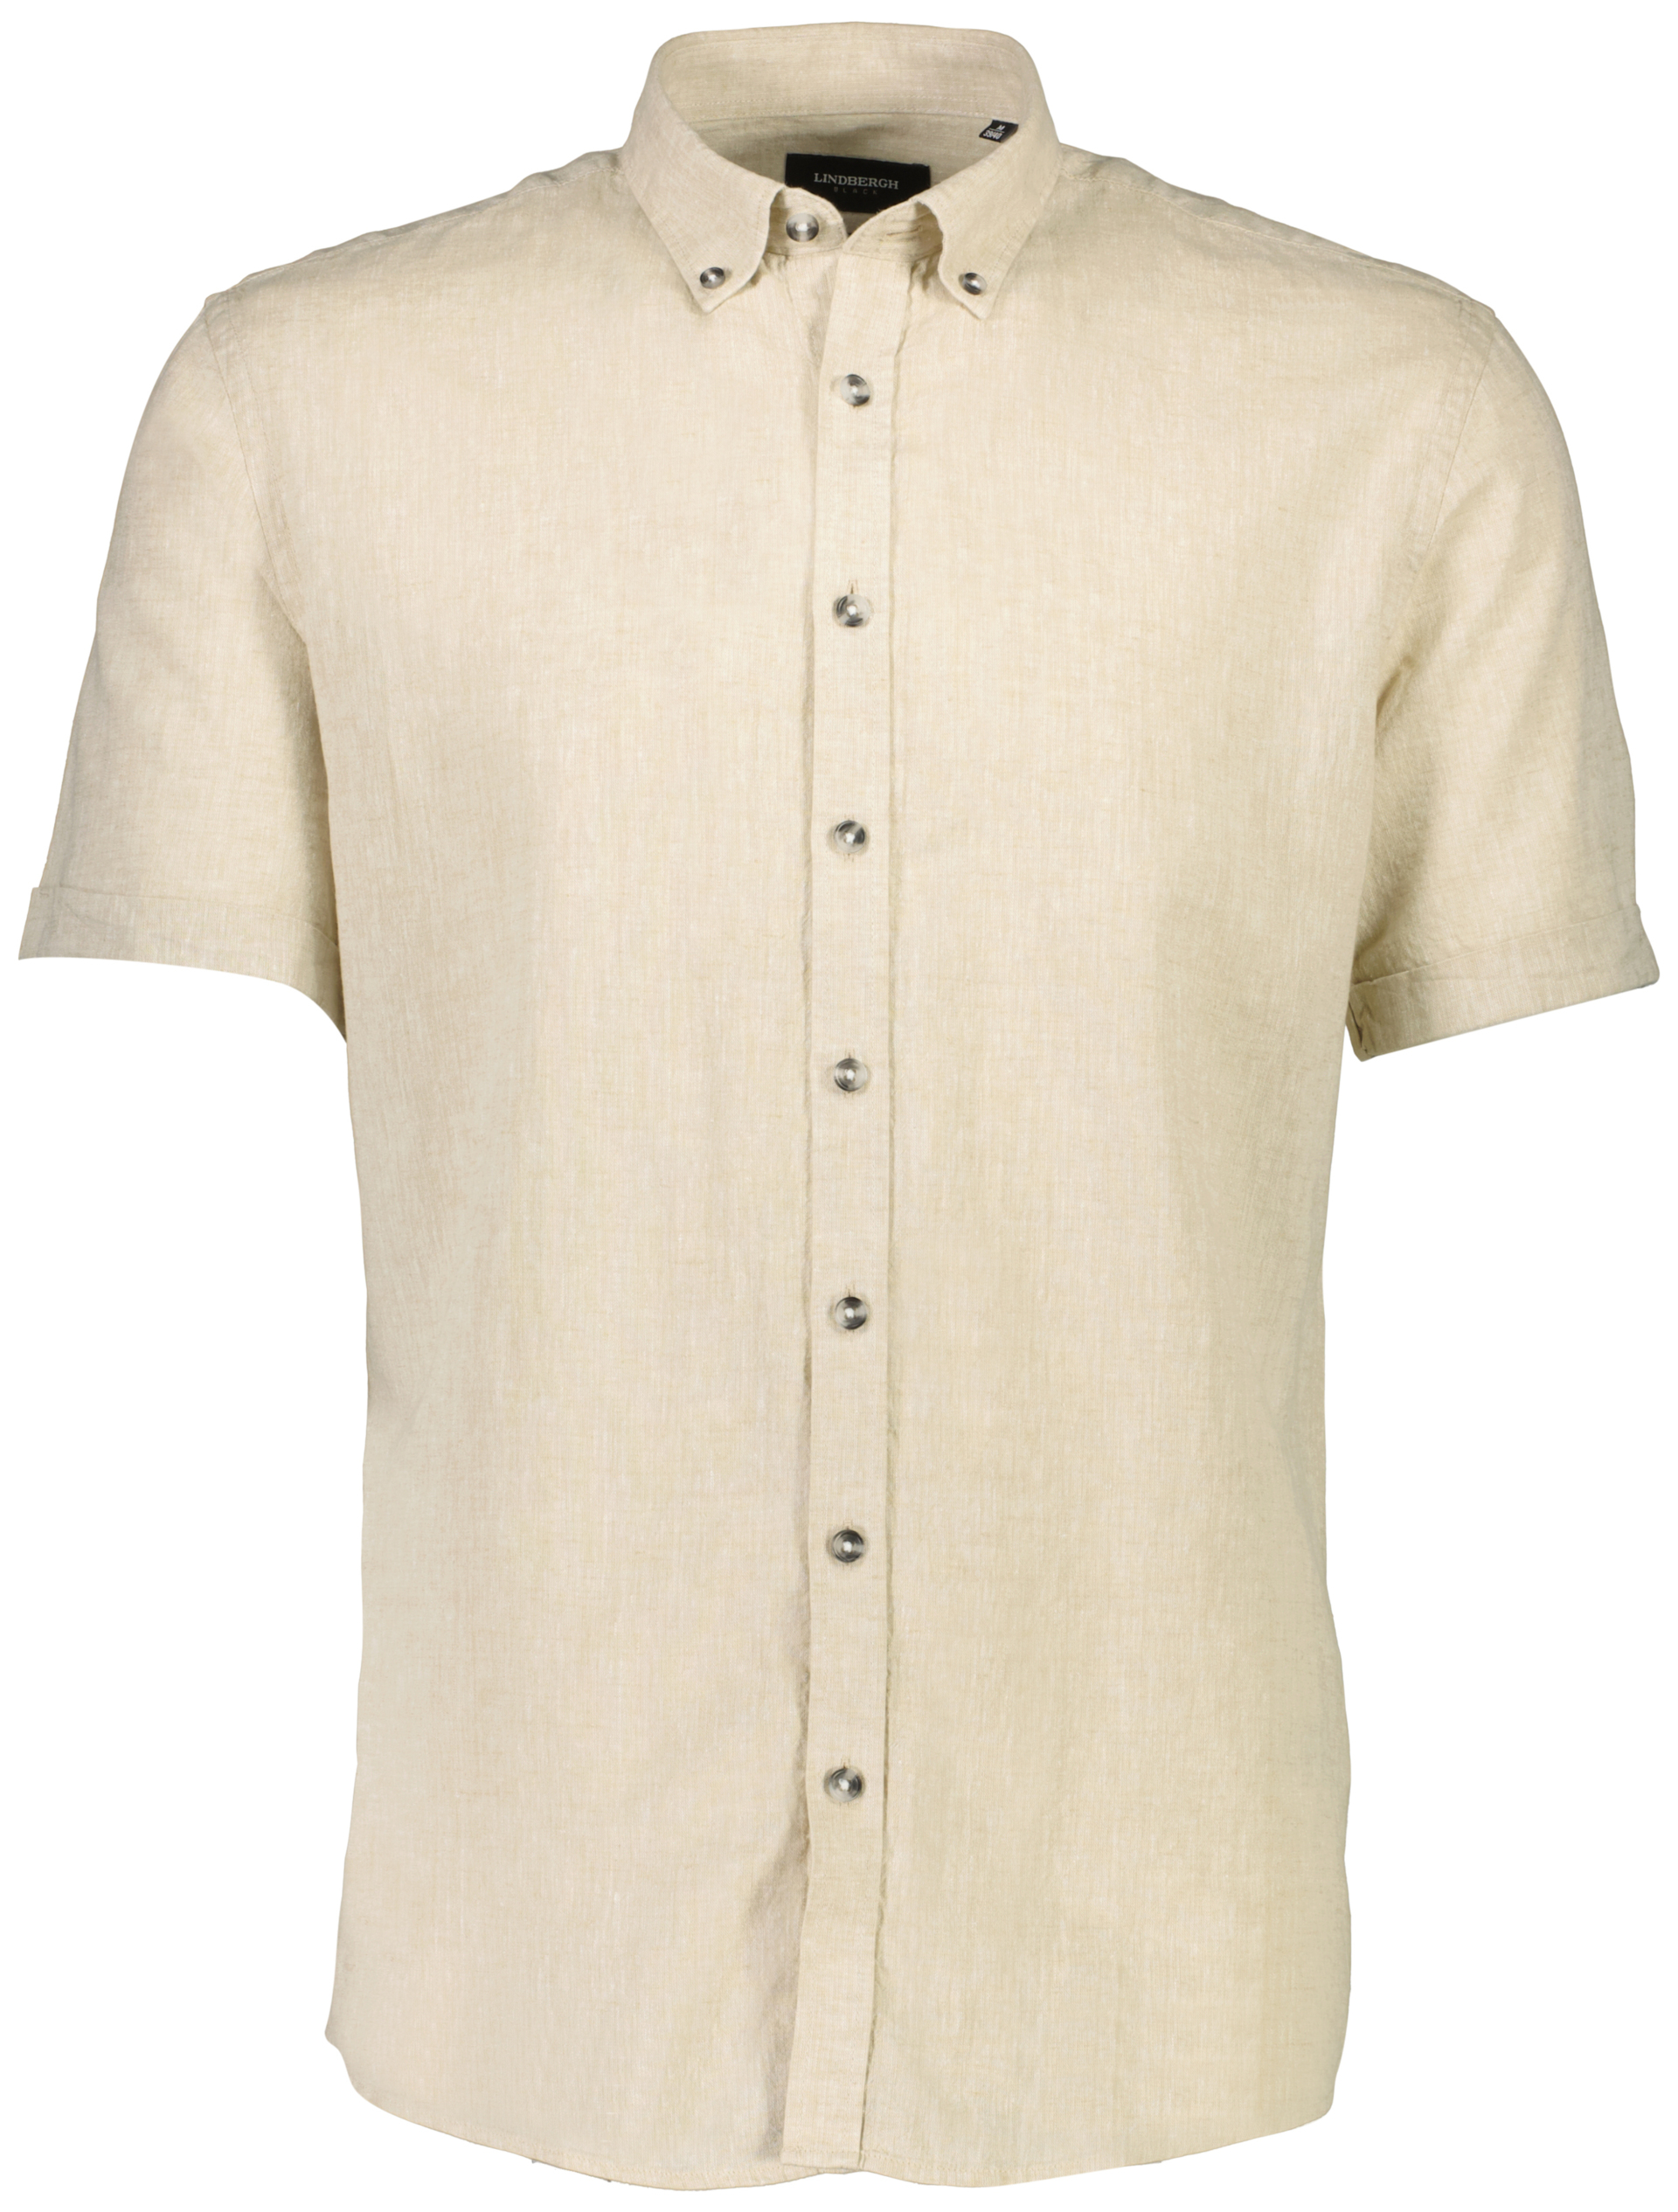 Lindbergh Linen shirt green / khaki